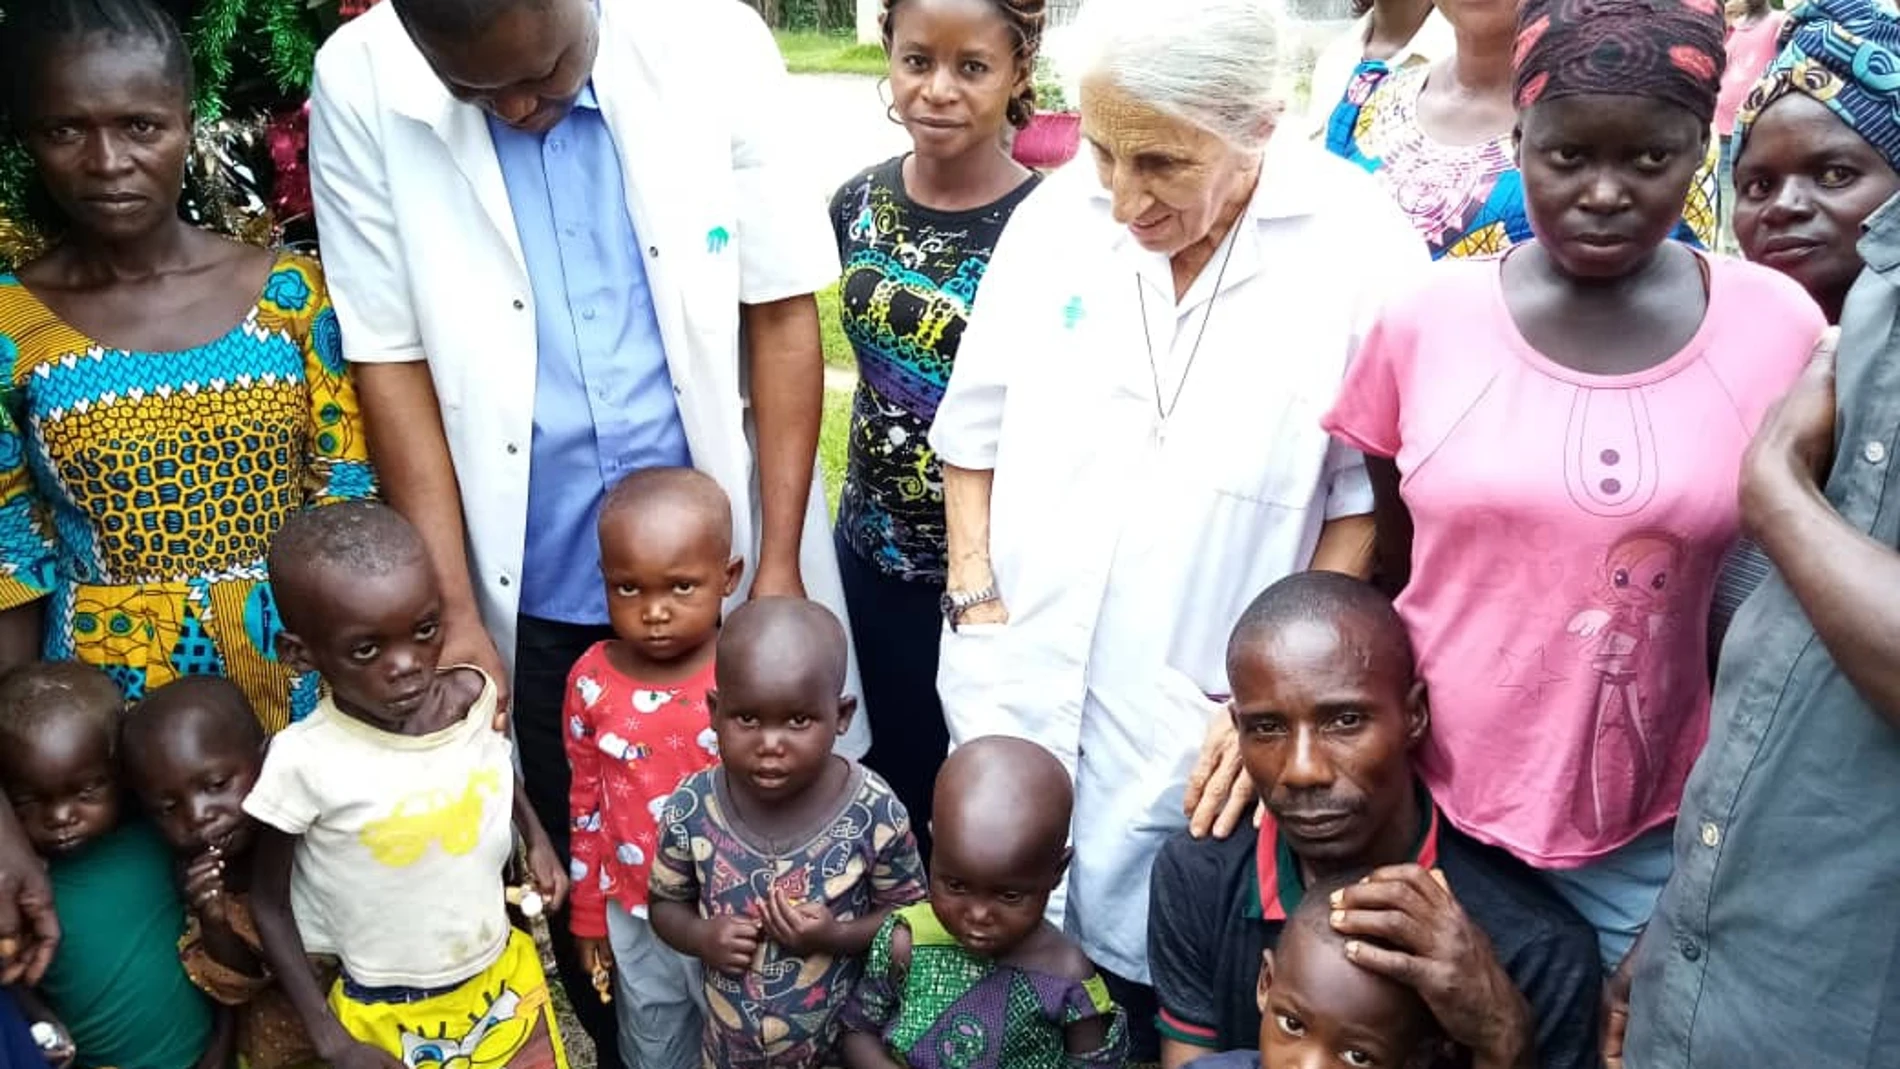 Teresa Riu, medico y misionera de Cristo Jesús, durante una jornada de trabajo en la República Democrática del Congo